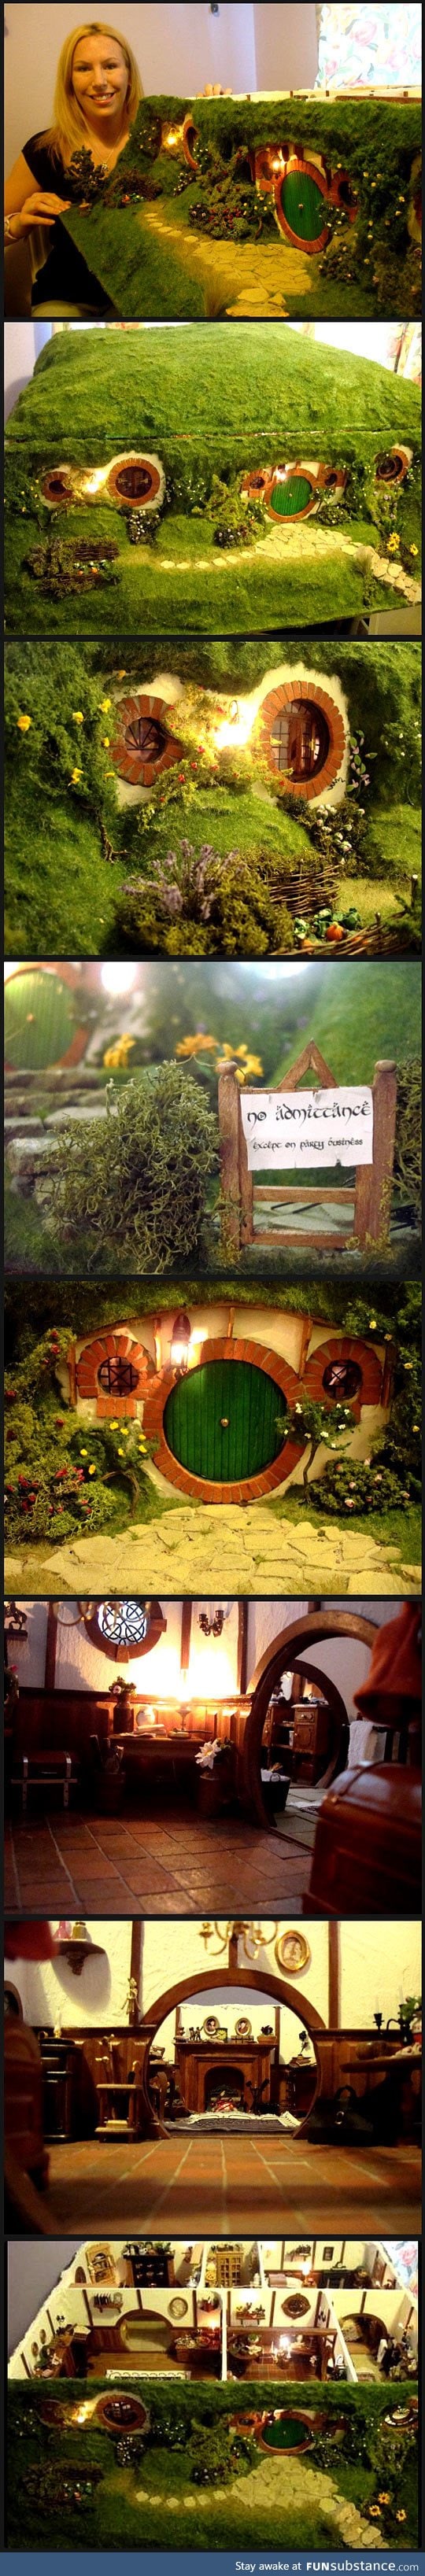 Ever seen a hobbit dollhouse?